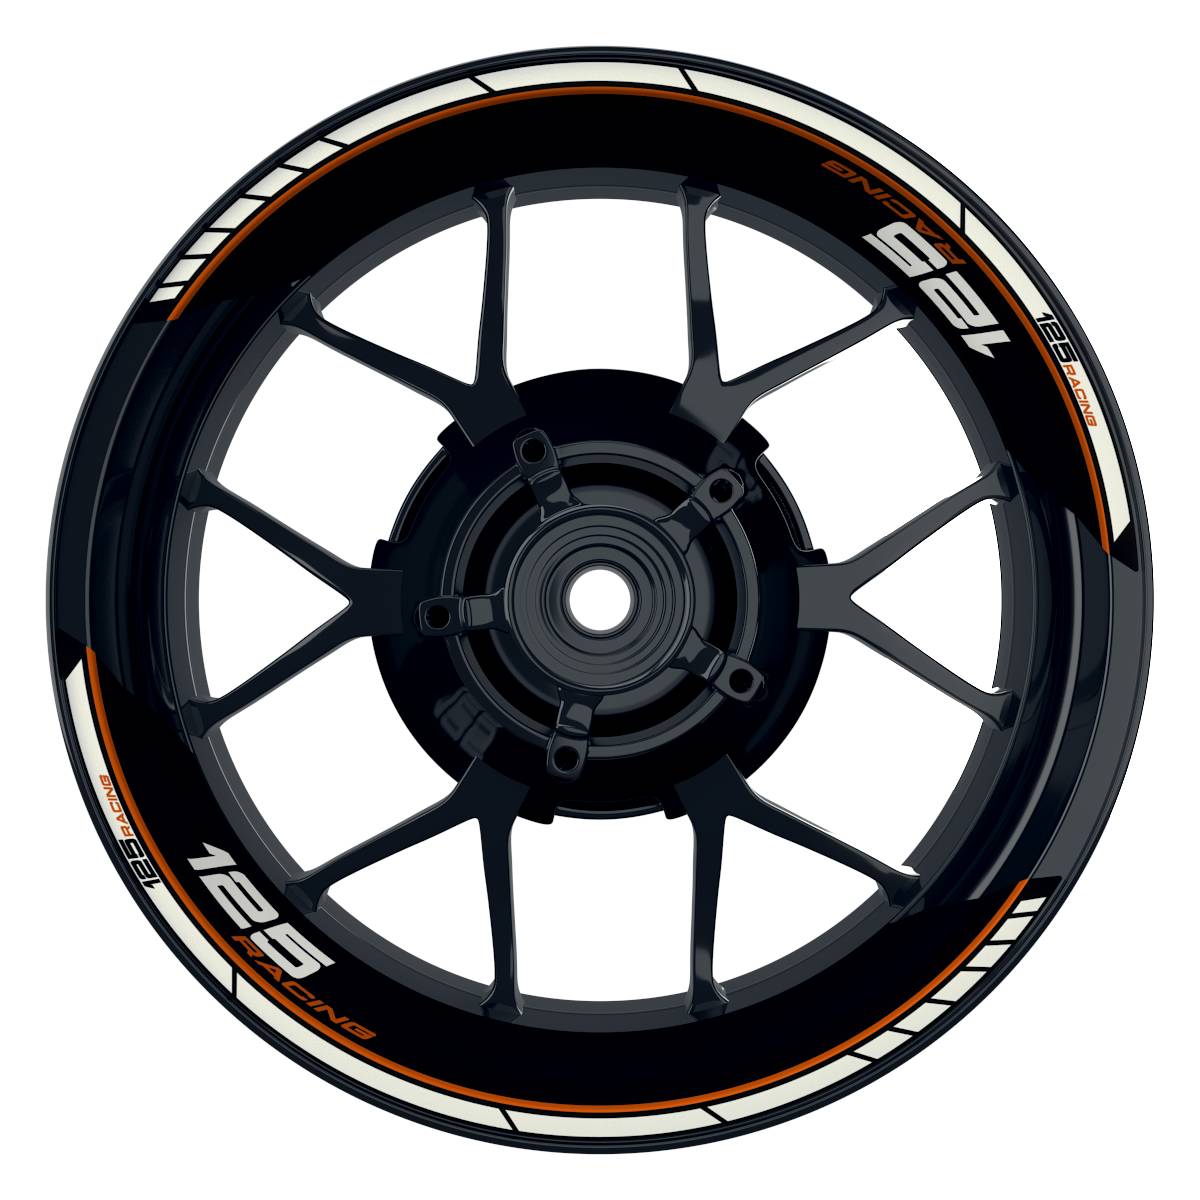 KTM Racing 125 Clean schwarz orange Frontansicht